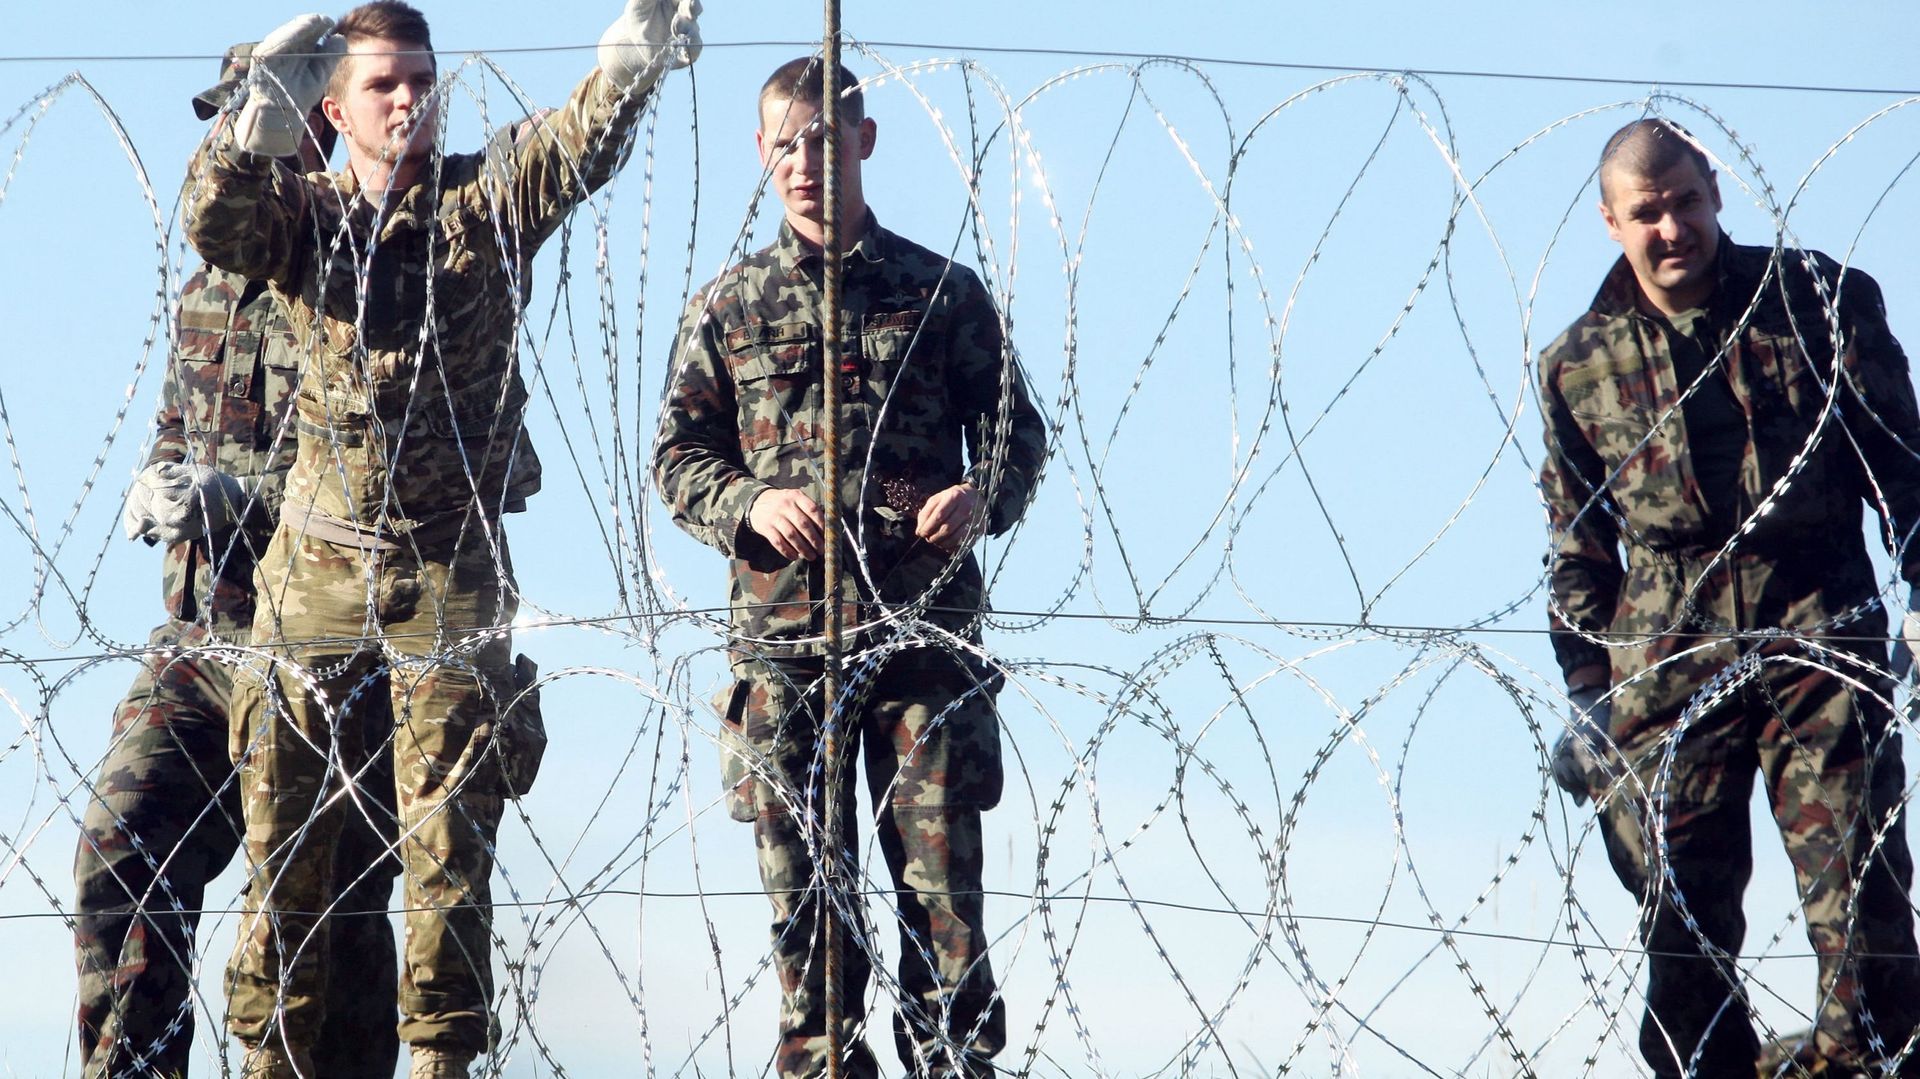 Des soldats slovènes installent des clôtures de barbelés à la frontière slovéno-croate à Sela pri Dobovi près de Brezice, le 11 novembre 2015.